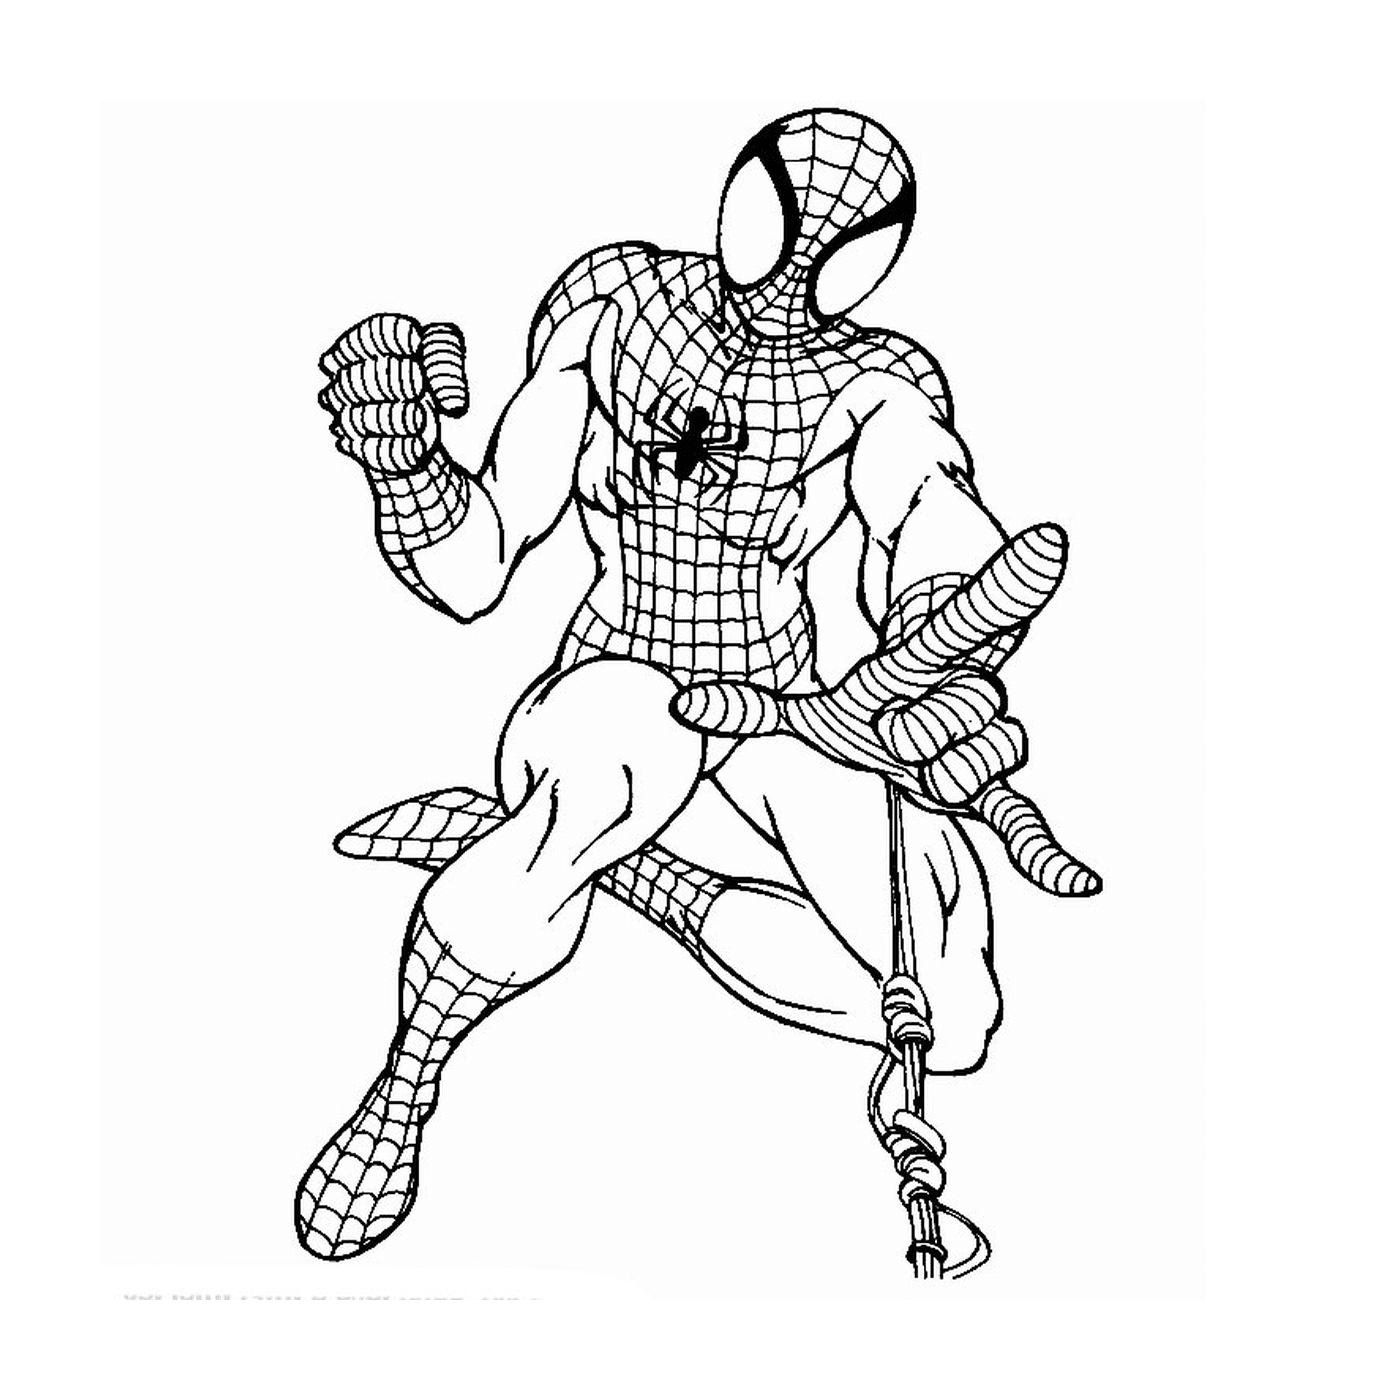  Человек-паук из Marvel комиксов 